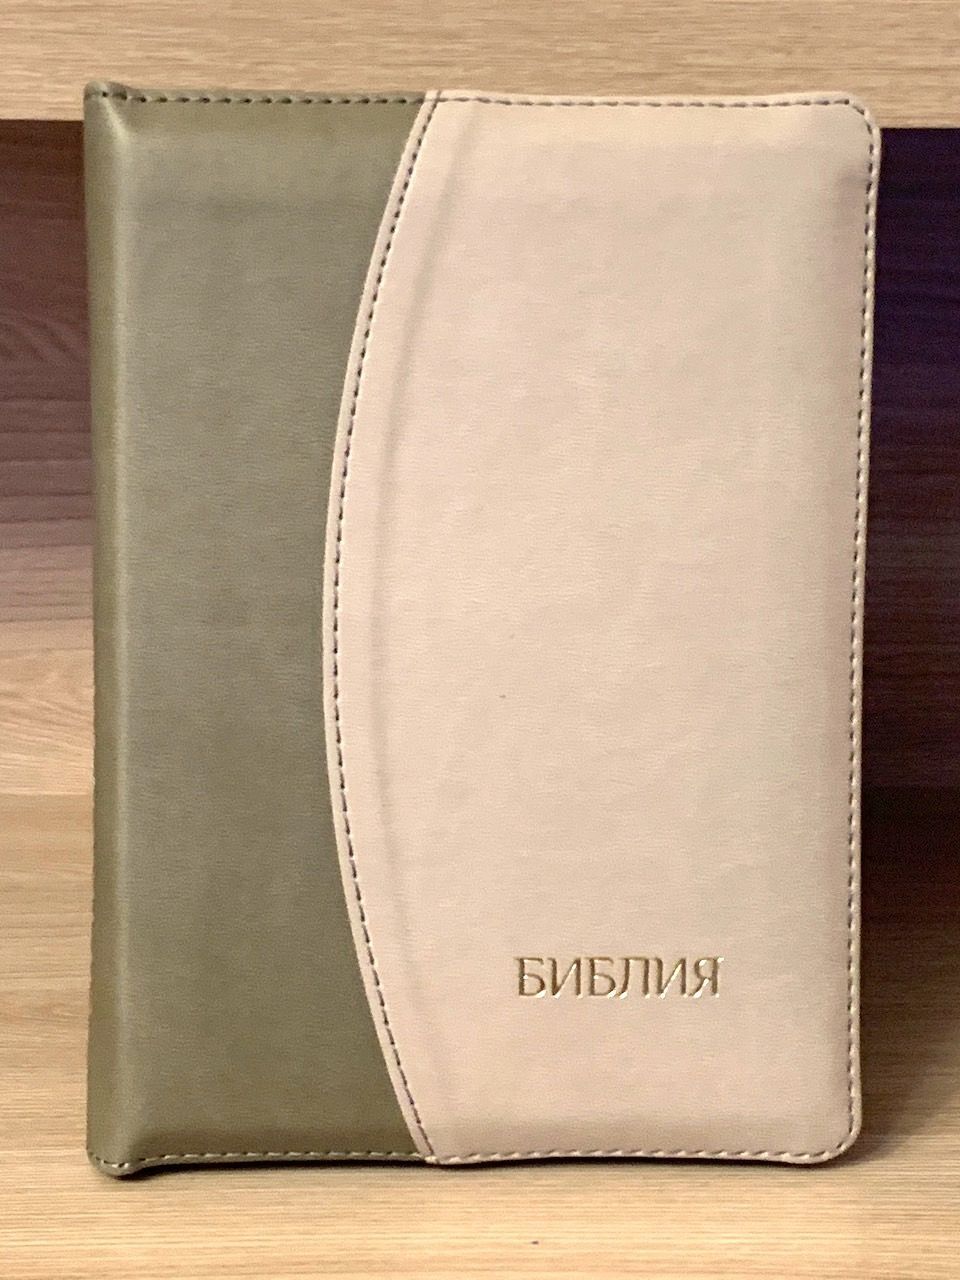 БИБЛИЯ 046DTzti формат, переплет из искусственной кожи на молнии с индексами, надпись серебром "Библия", цвет темно-серый/светло-серый полукругом, средний формат, 132*182 мм, цветные карты, шрифт 12 кегель